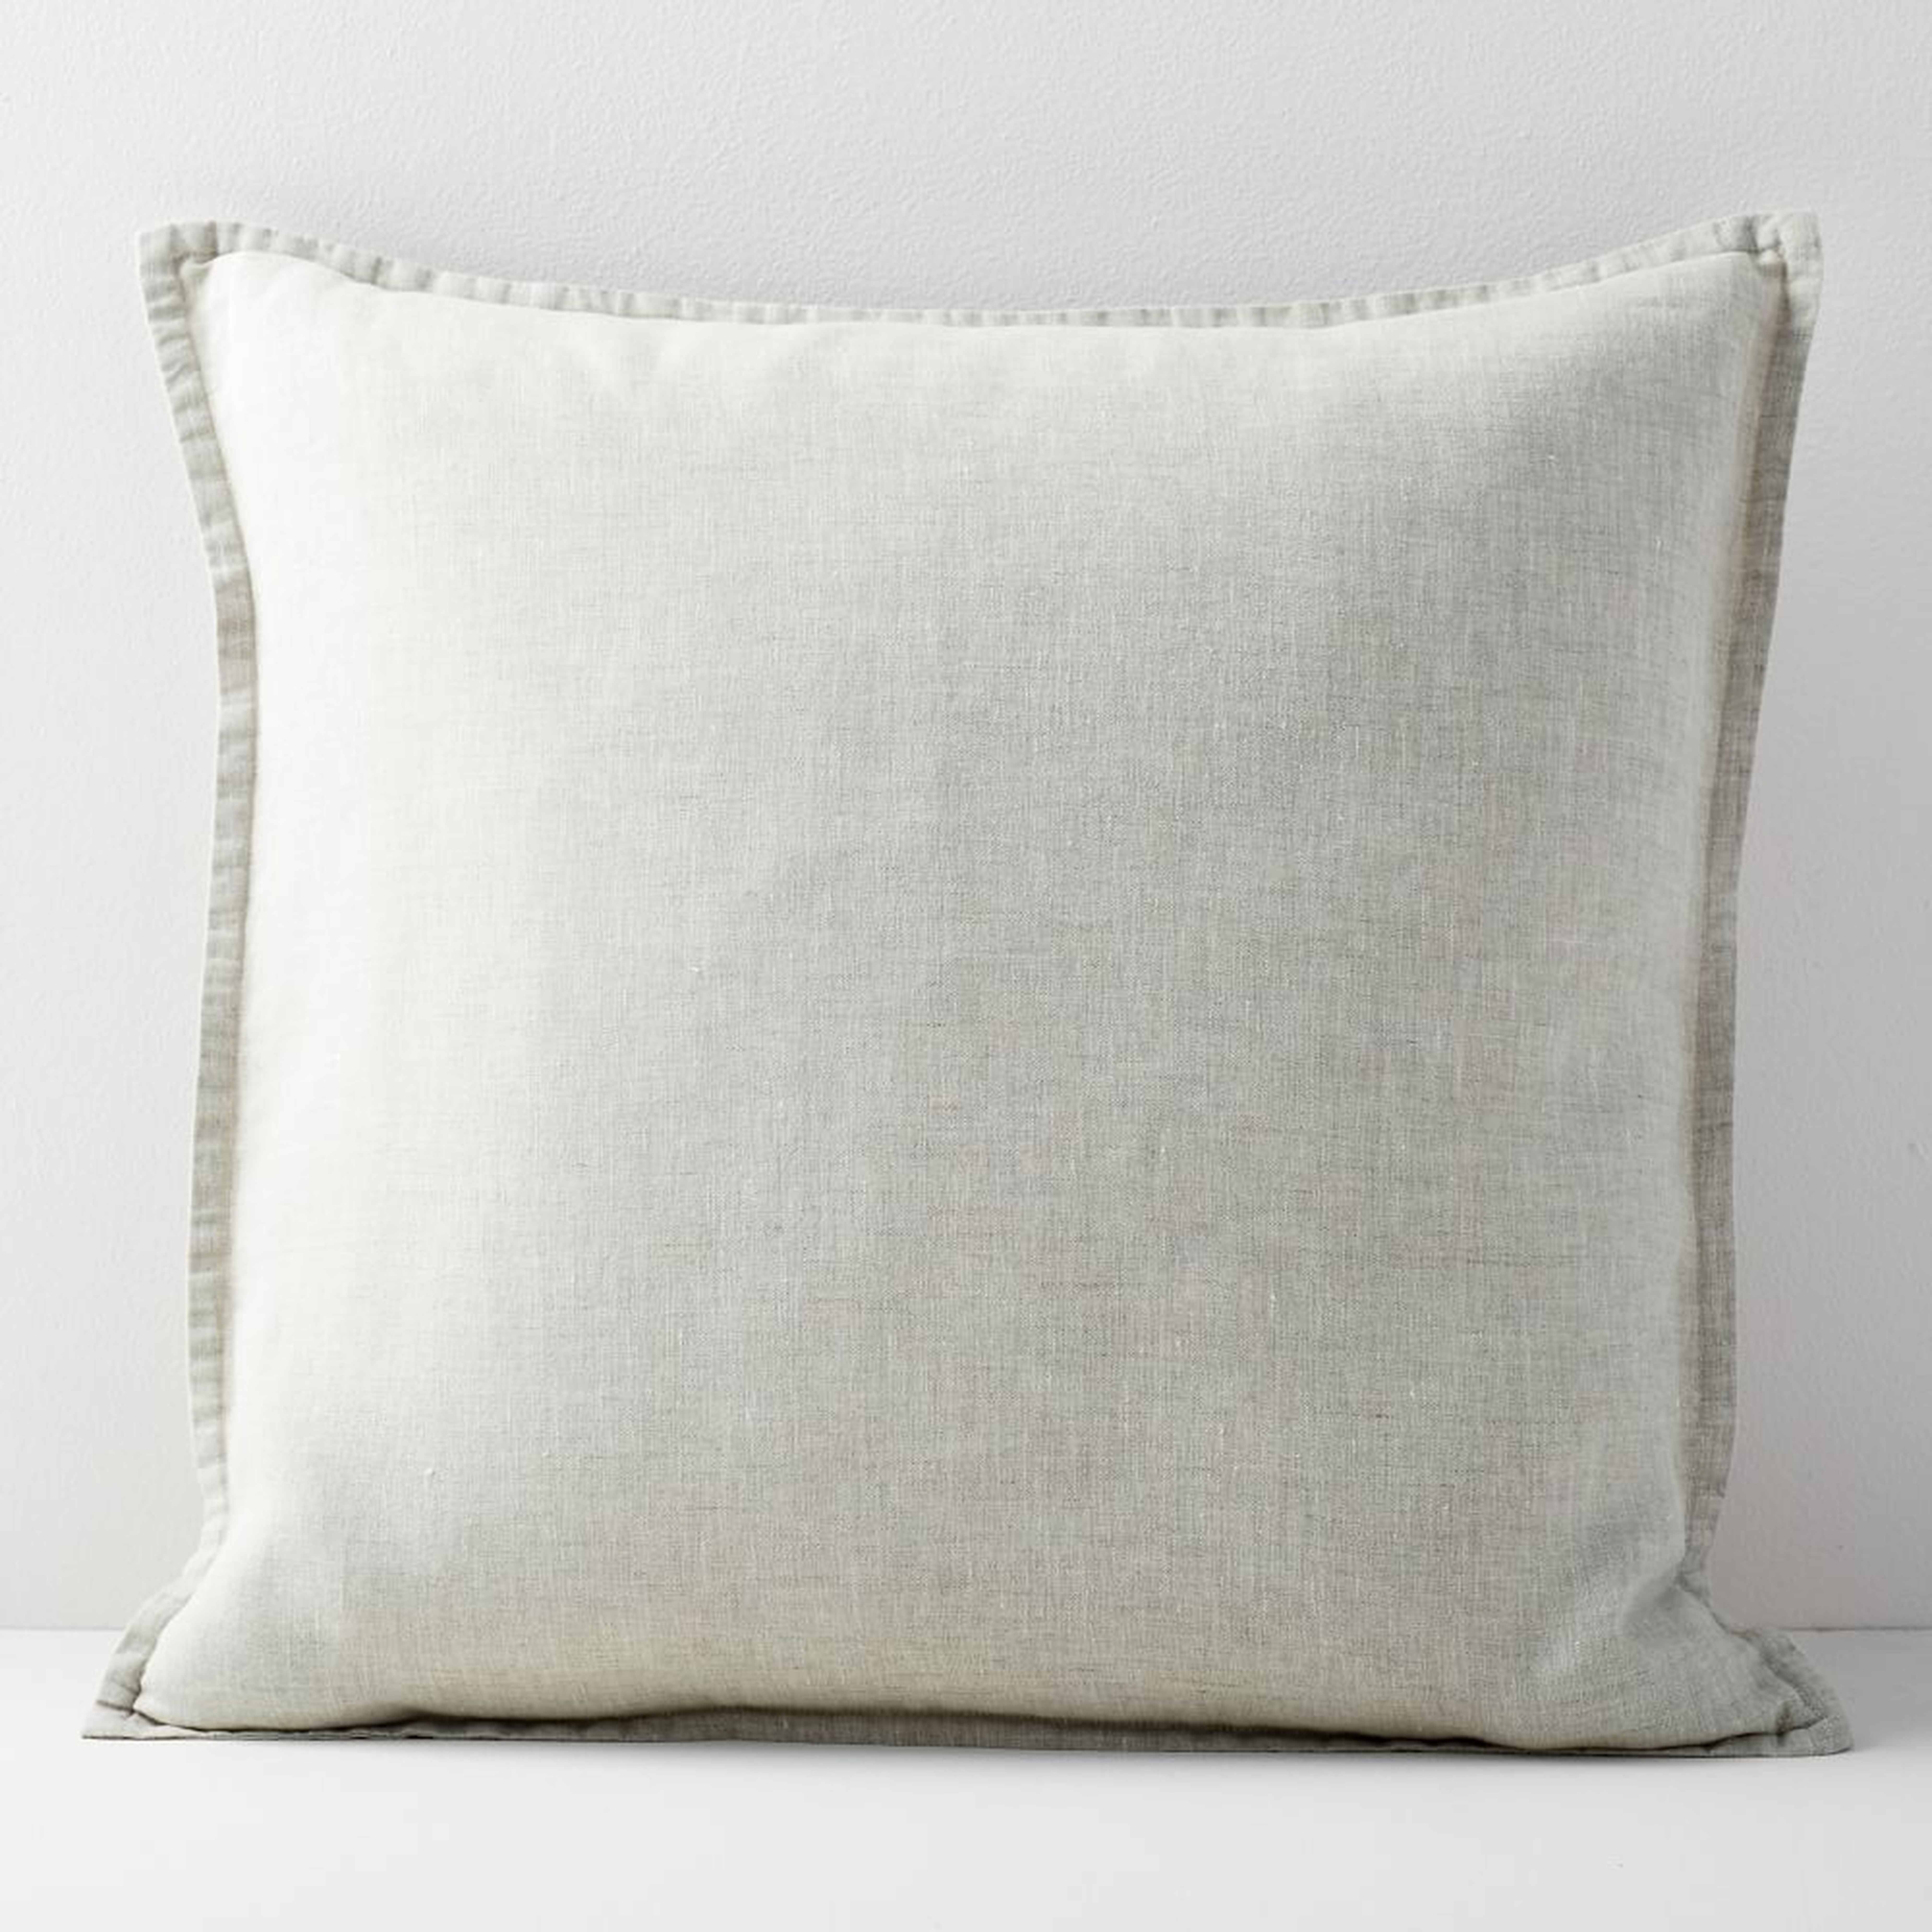 European Flax Linen Pillow Cover, 20"x20", Natural, Set of 2 - West Elm